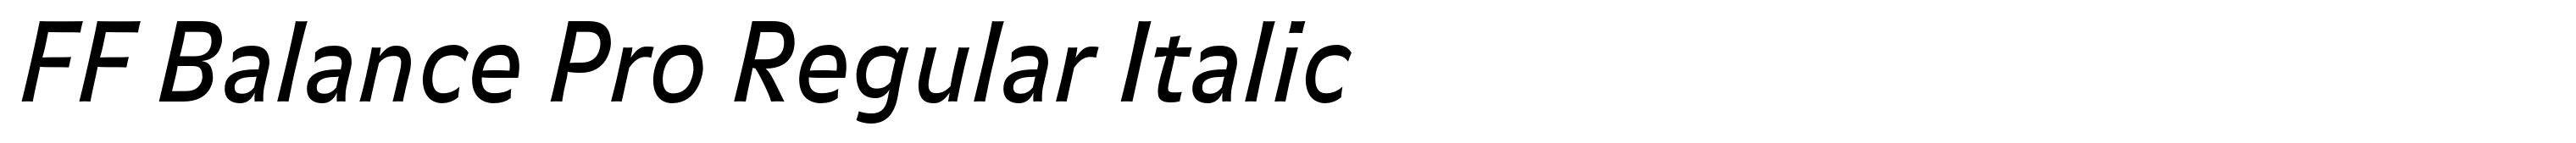 FF Balance Pro Regular Italic